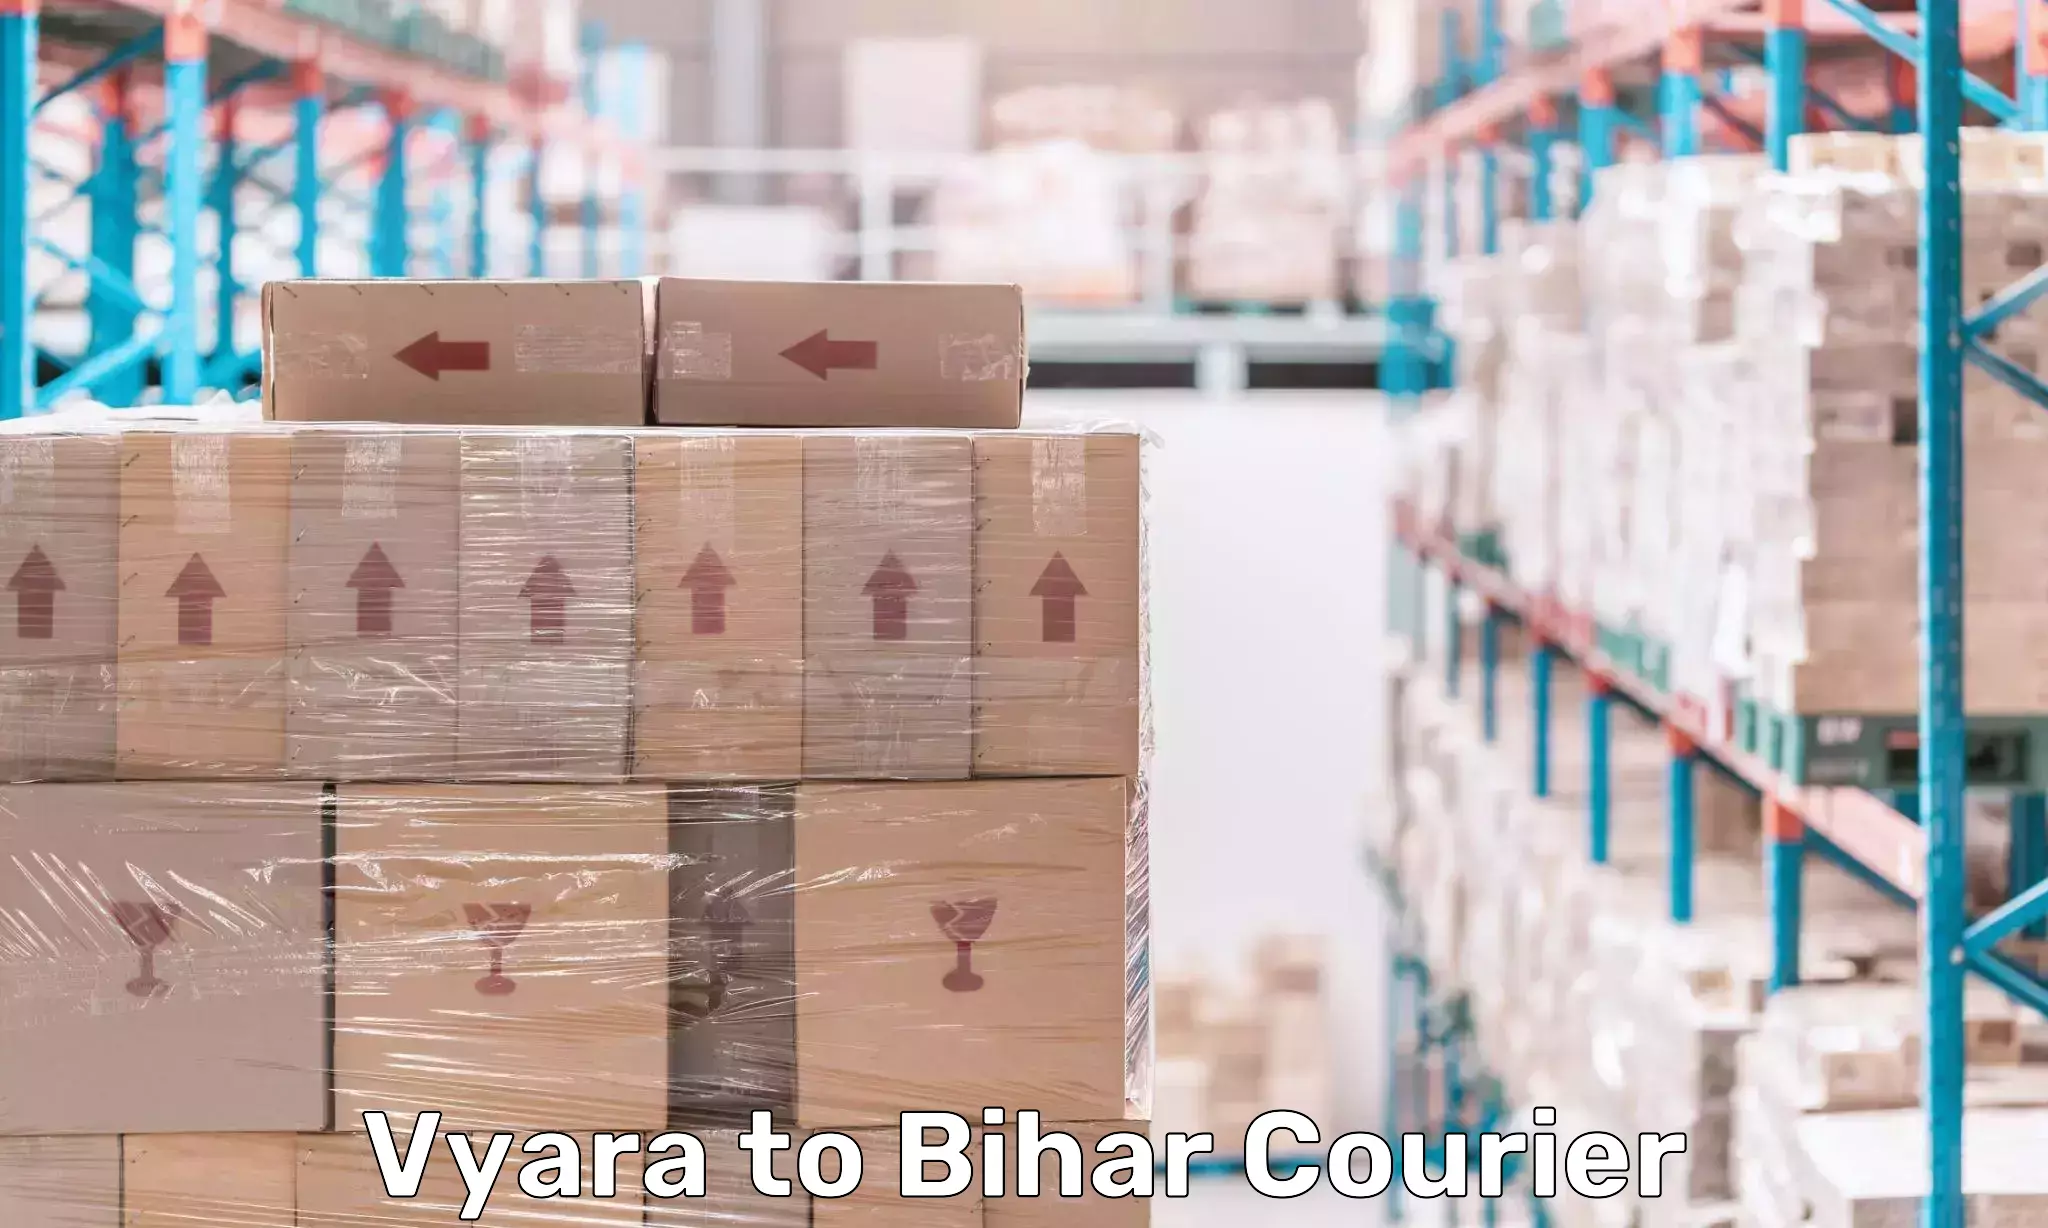 Express logistics service Vyara to Bihar